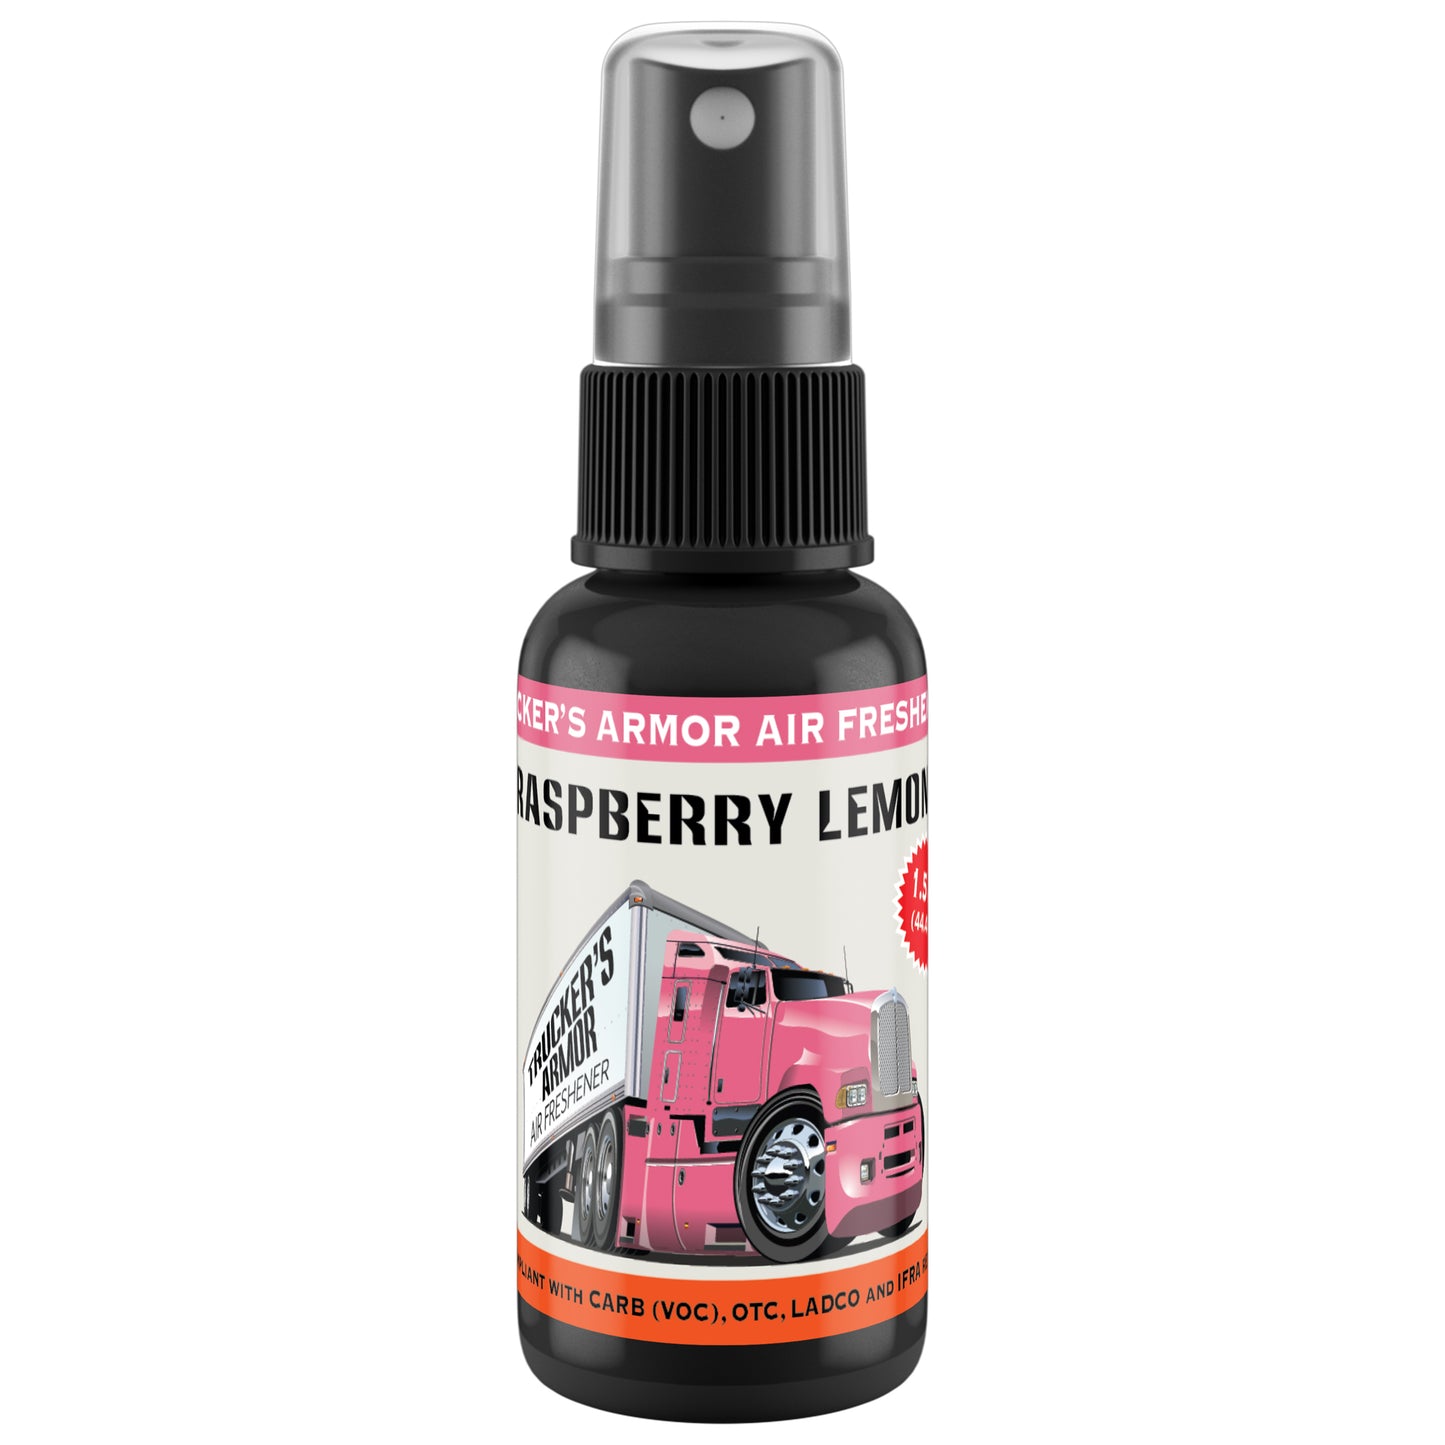 Trucker's Armor Air Freshener - Raspberry Lemon Scent